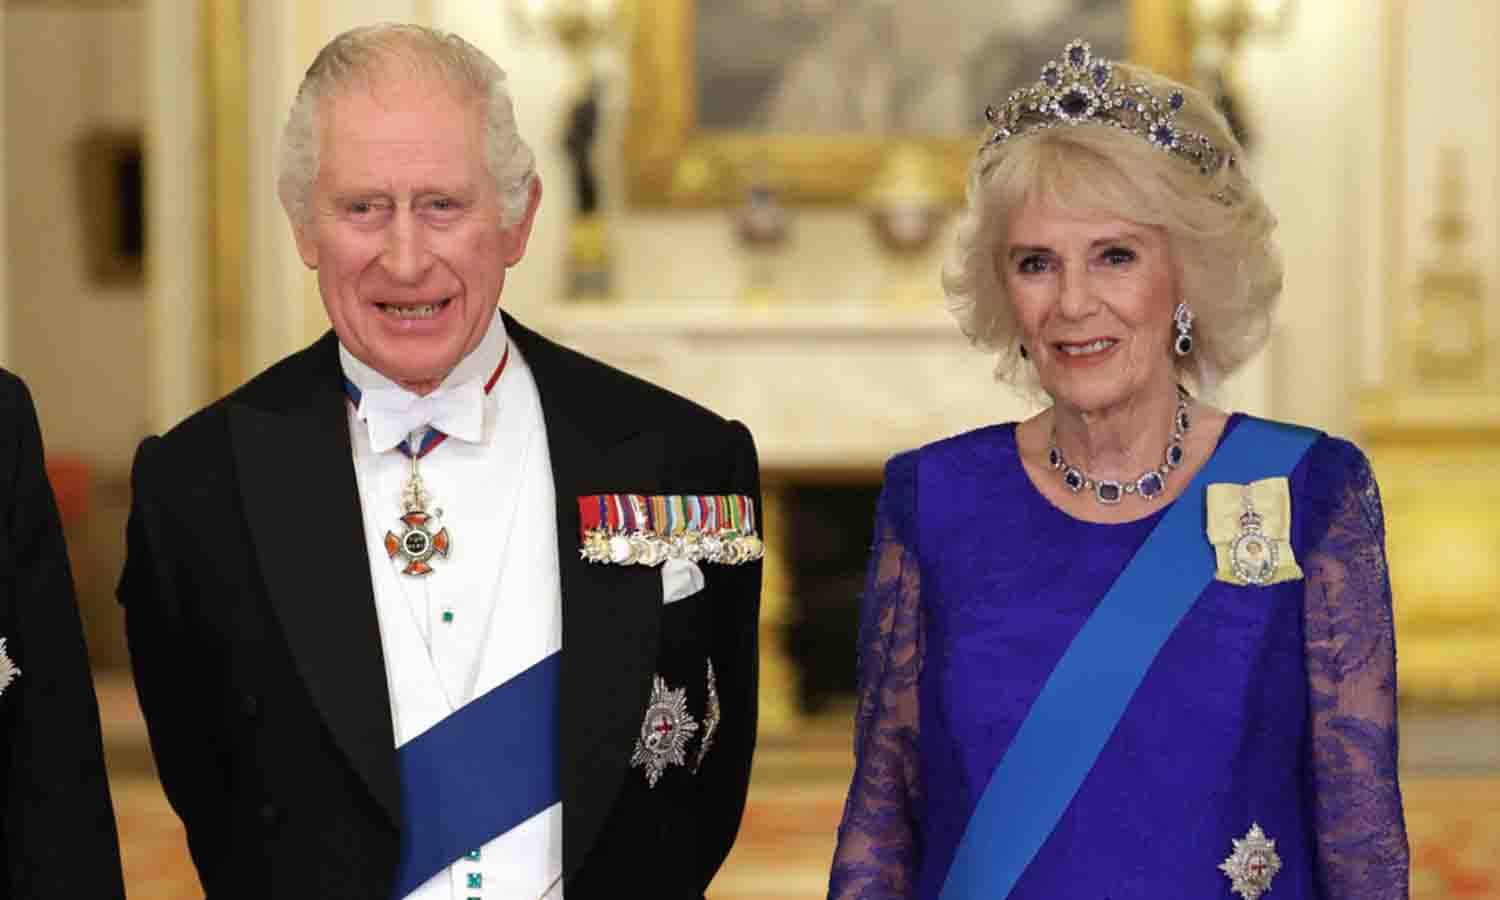 Coronación del rey Carlos III: por primera vez en la historia Buckingham crea un emoji y cinco etiquetas para una investidura real